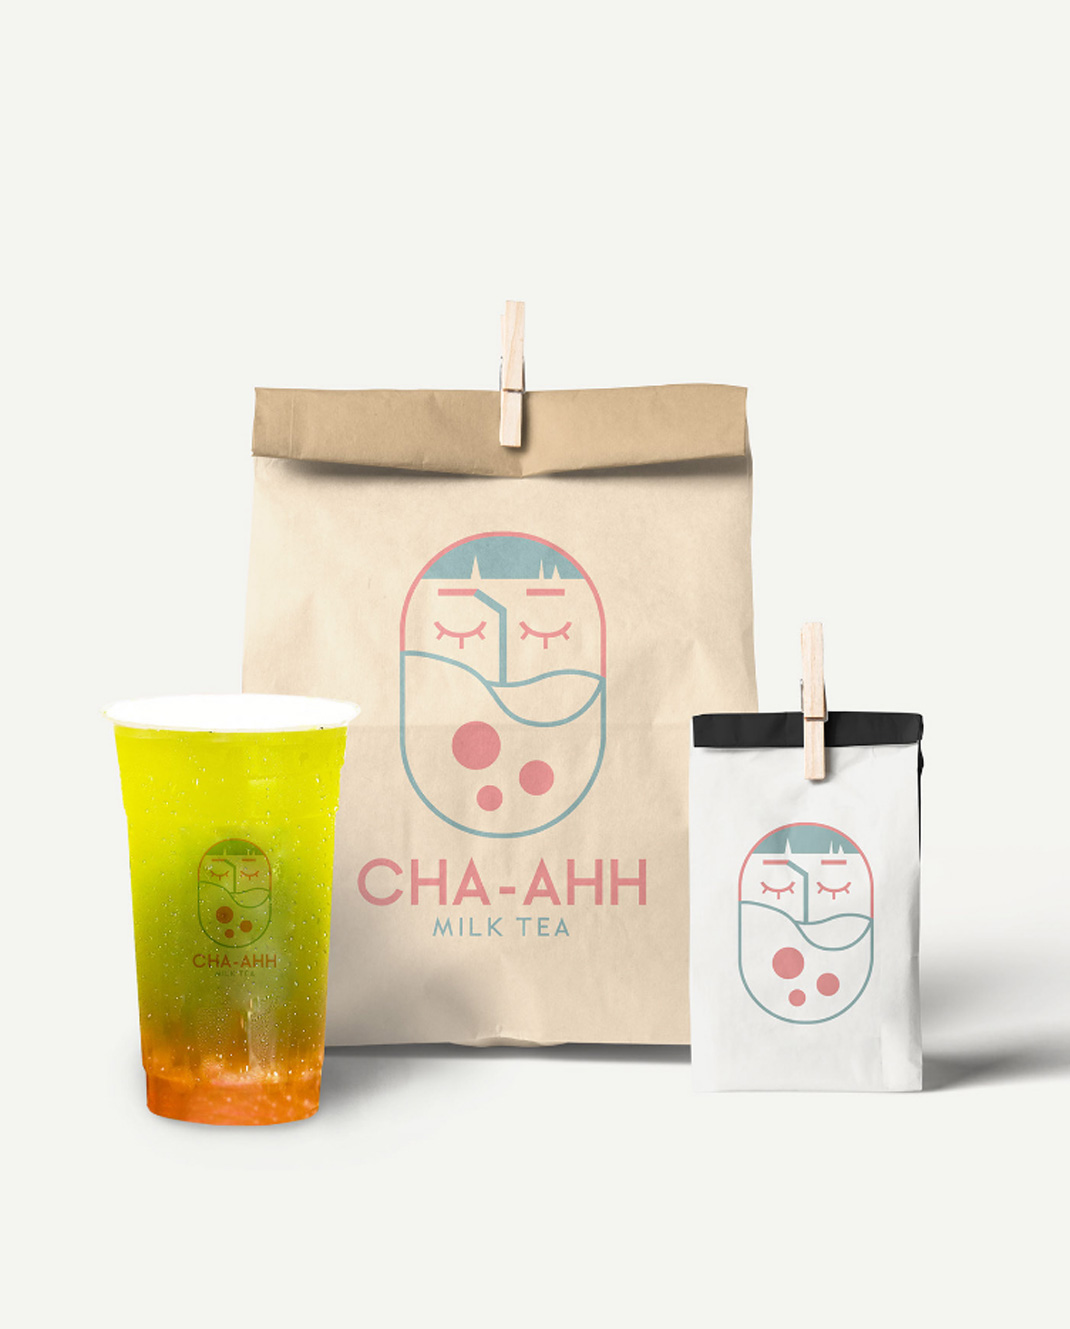 茶茶奶茶店CHA-AHH Milk Tea 菲律宾 奶茶店 插画设计 字体设计 logo设计 vi设计 空间设计